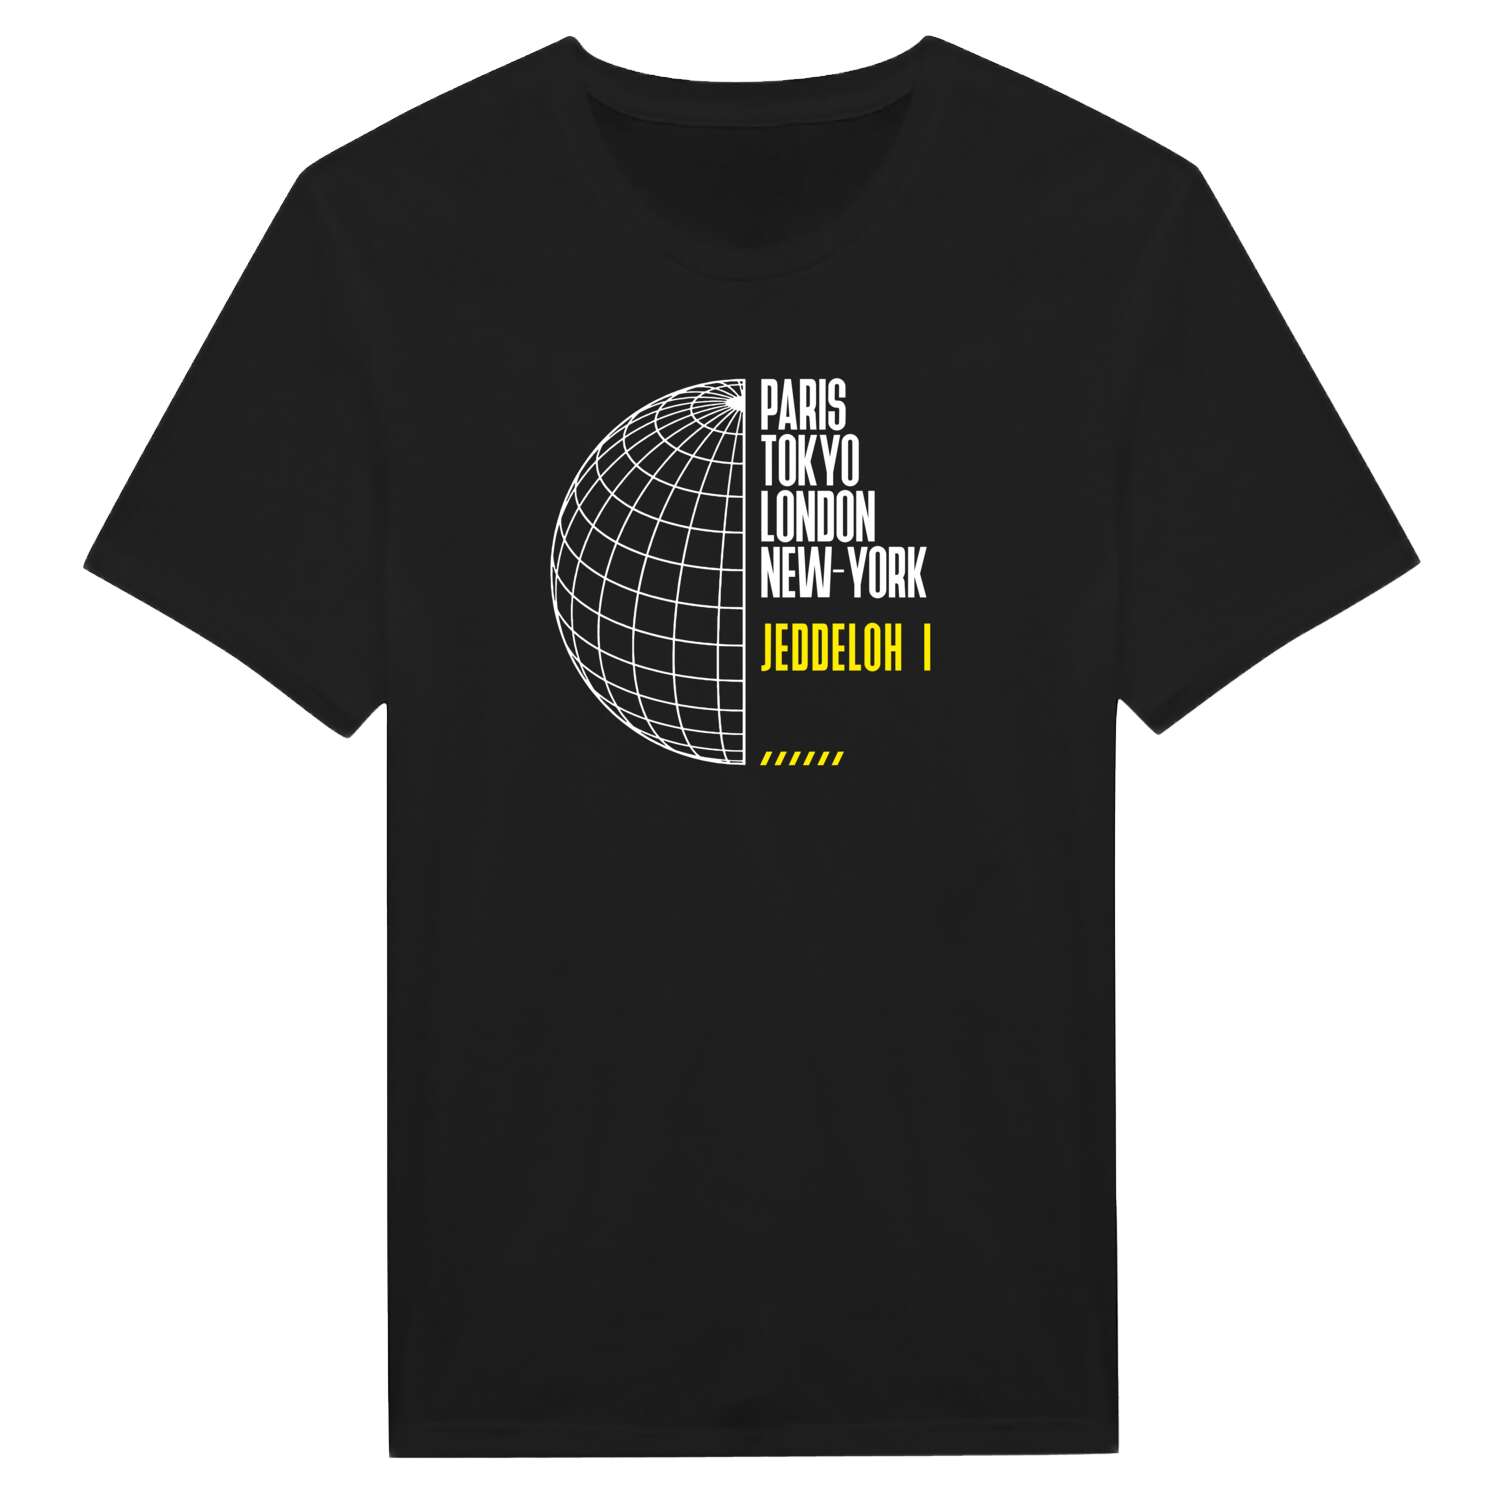 Jeddeloh I T-Shirt »Paris Tokyo London«